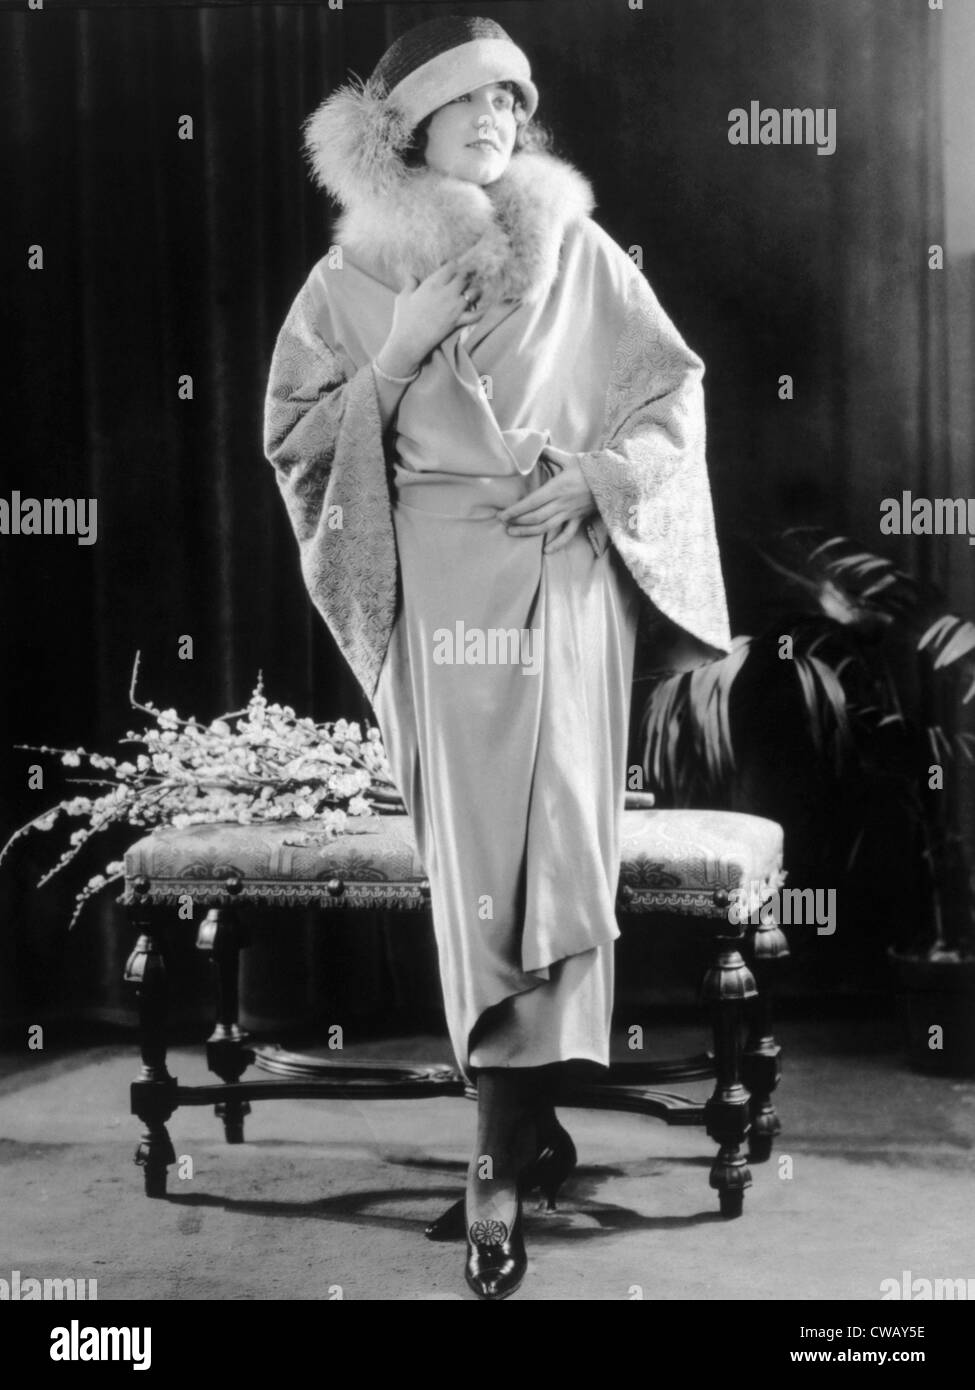 Abito di platino crêpe con pelliccia di volpe collare e manicotti ricamato, 1923. Foto: courtesy Everett Collection Foto Stock